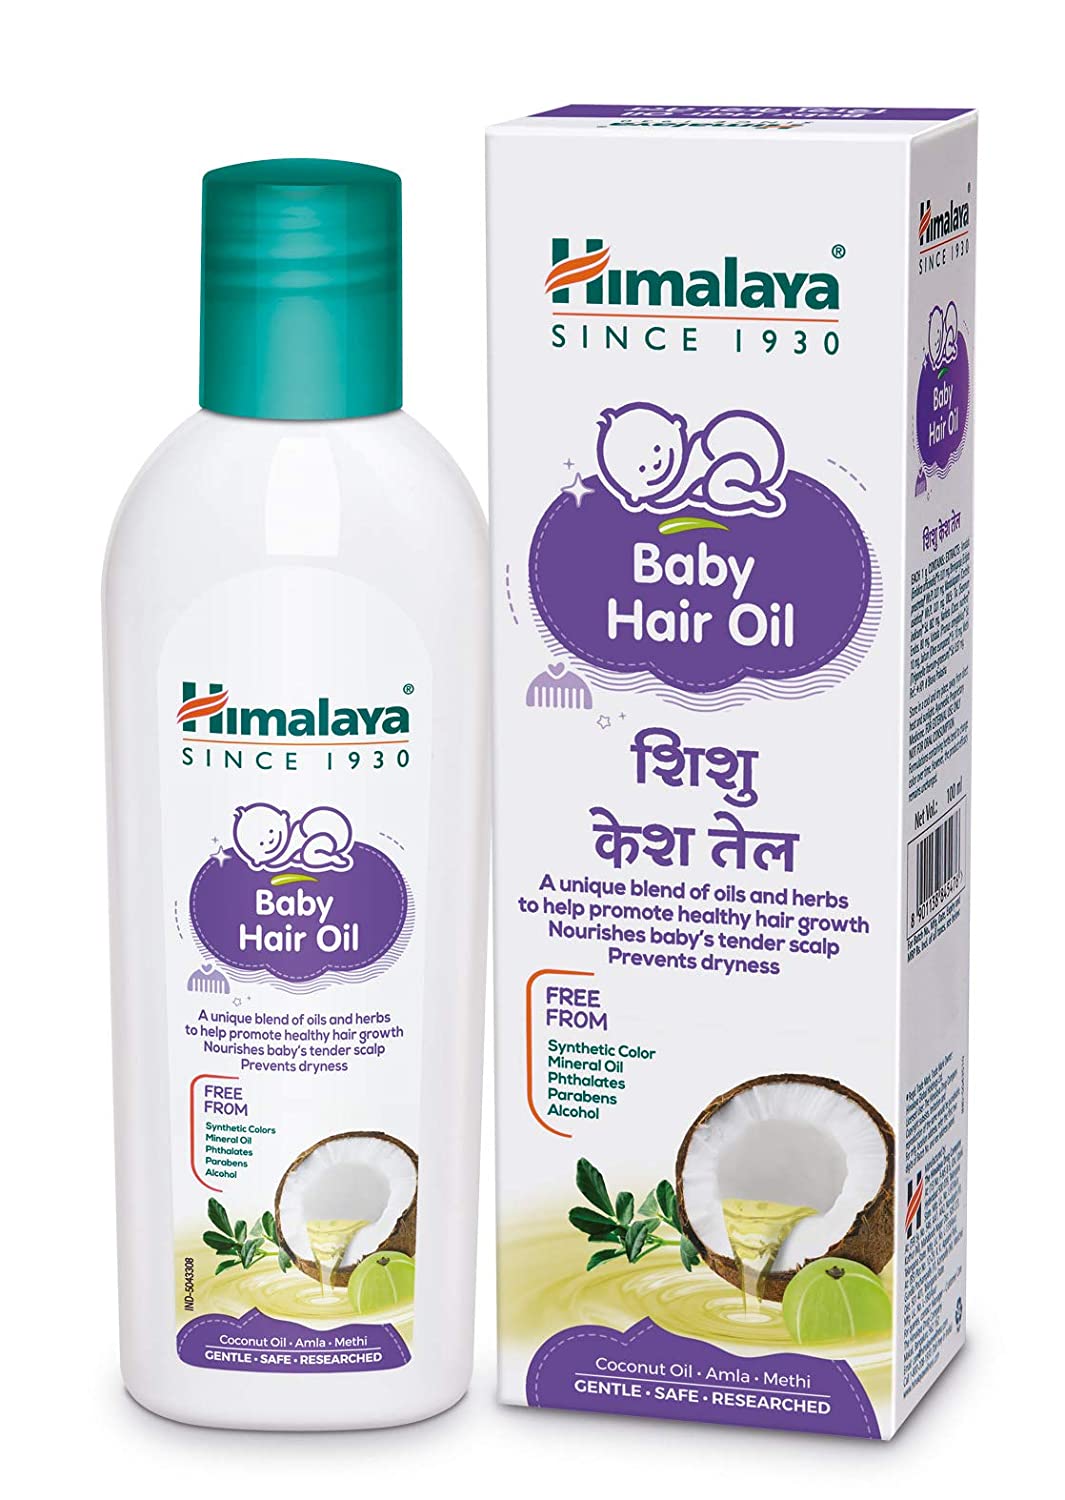 Himalaya Baby Hair Oil - 200ml, Himalaya Baby Hair Oil 